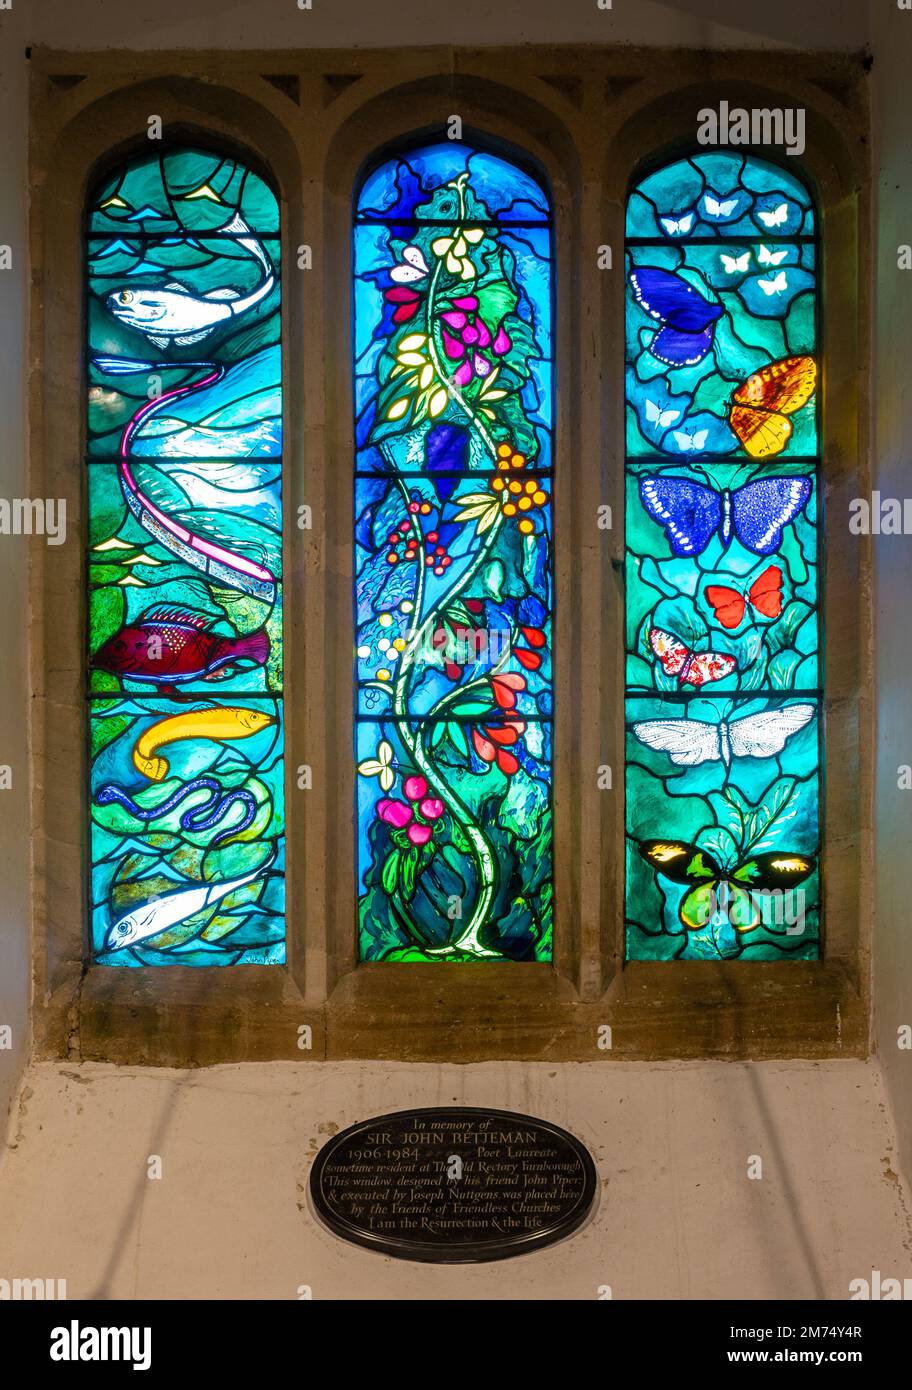 John Piper vitrail vitrail à la mémoire de Sir John Betjeman dans l'église paroissiale de All Saints à Farnborough, West Berkshire, Angleterre, Royaume-Uni Banque D'Images